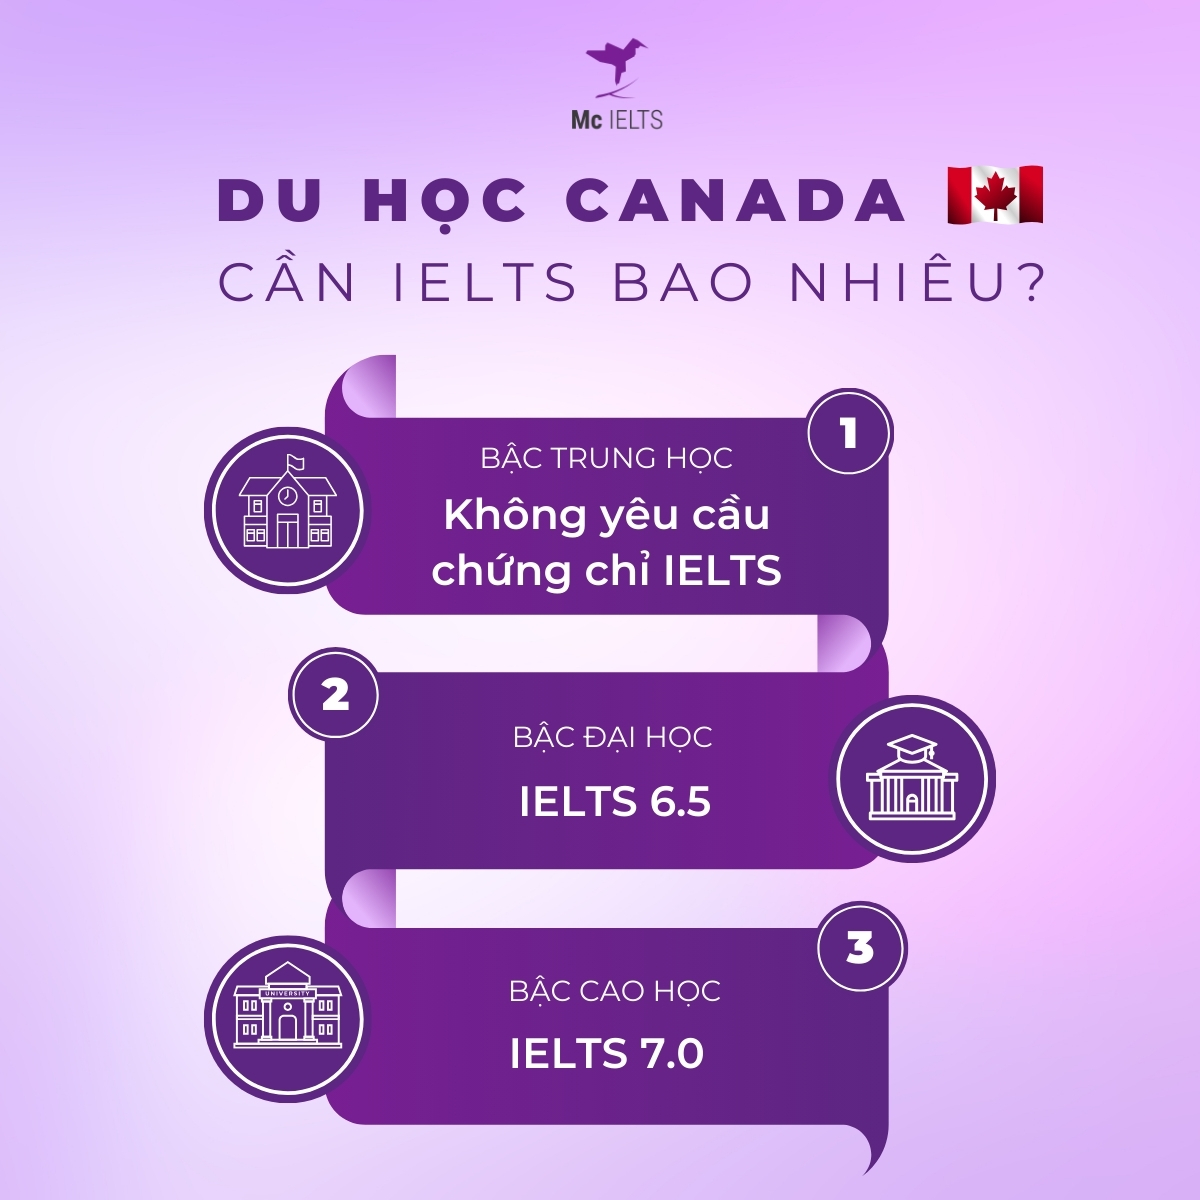 IELTS bao nhiêu để đi du học quốc gia Canada?